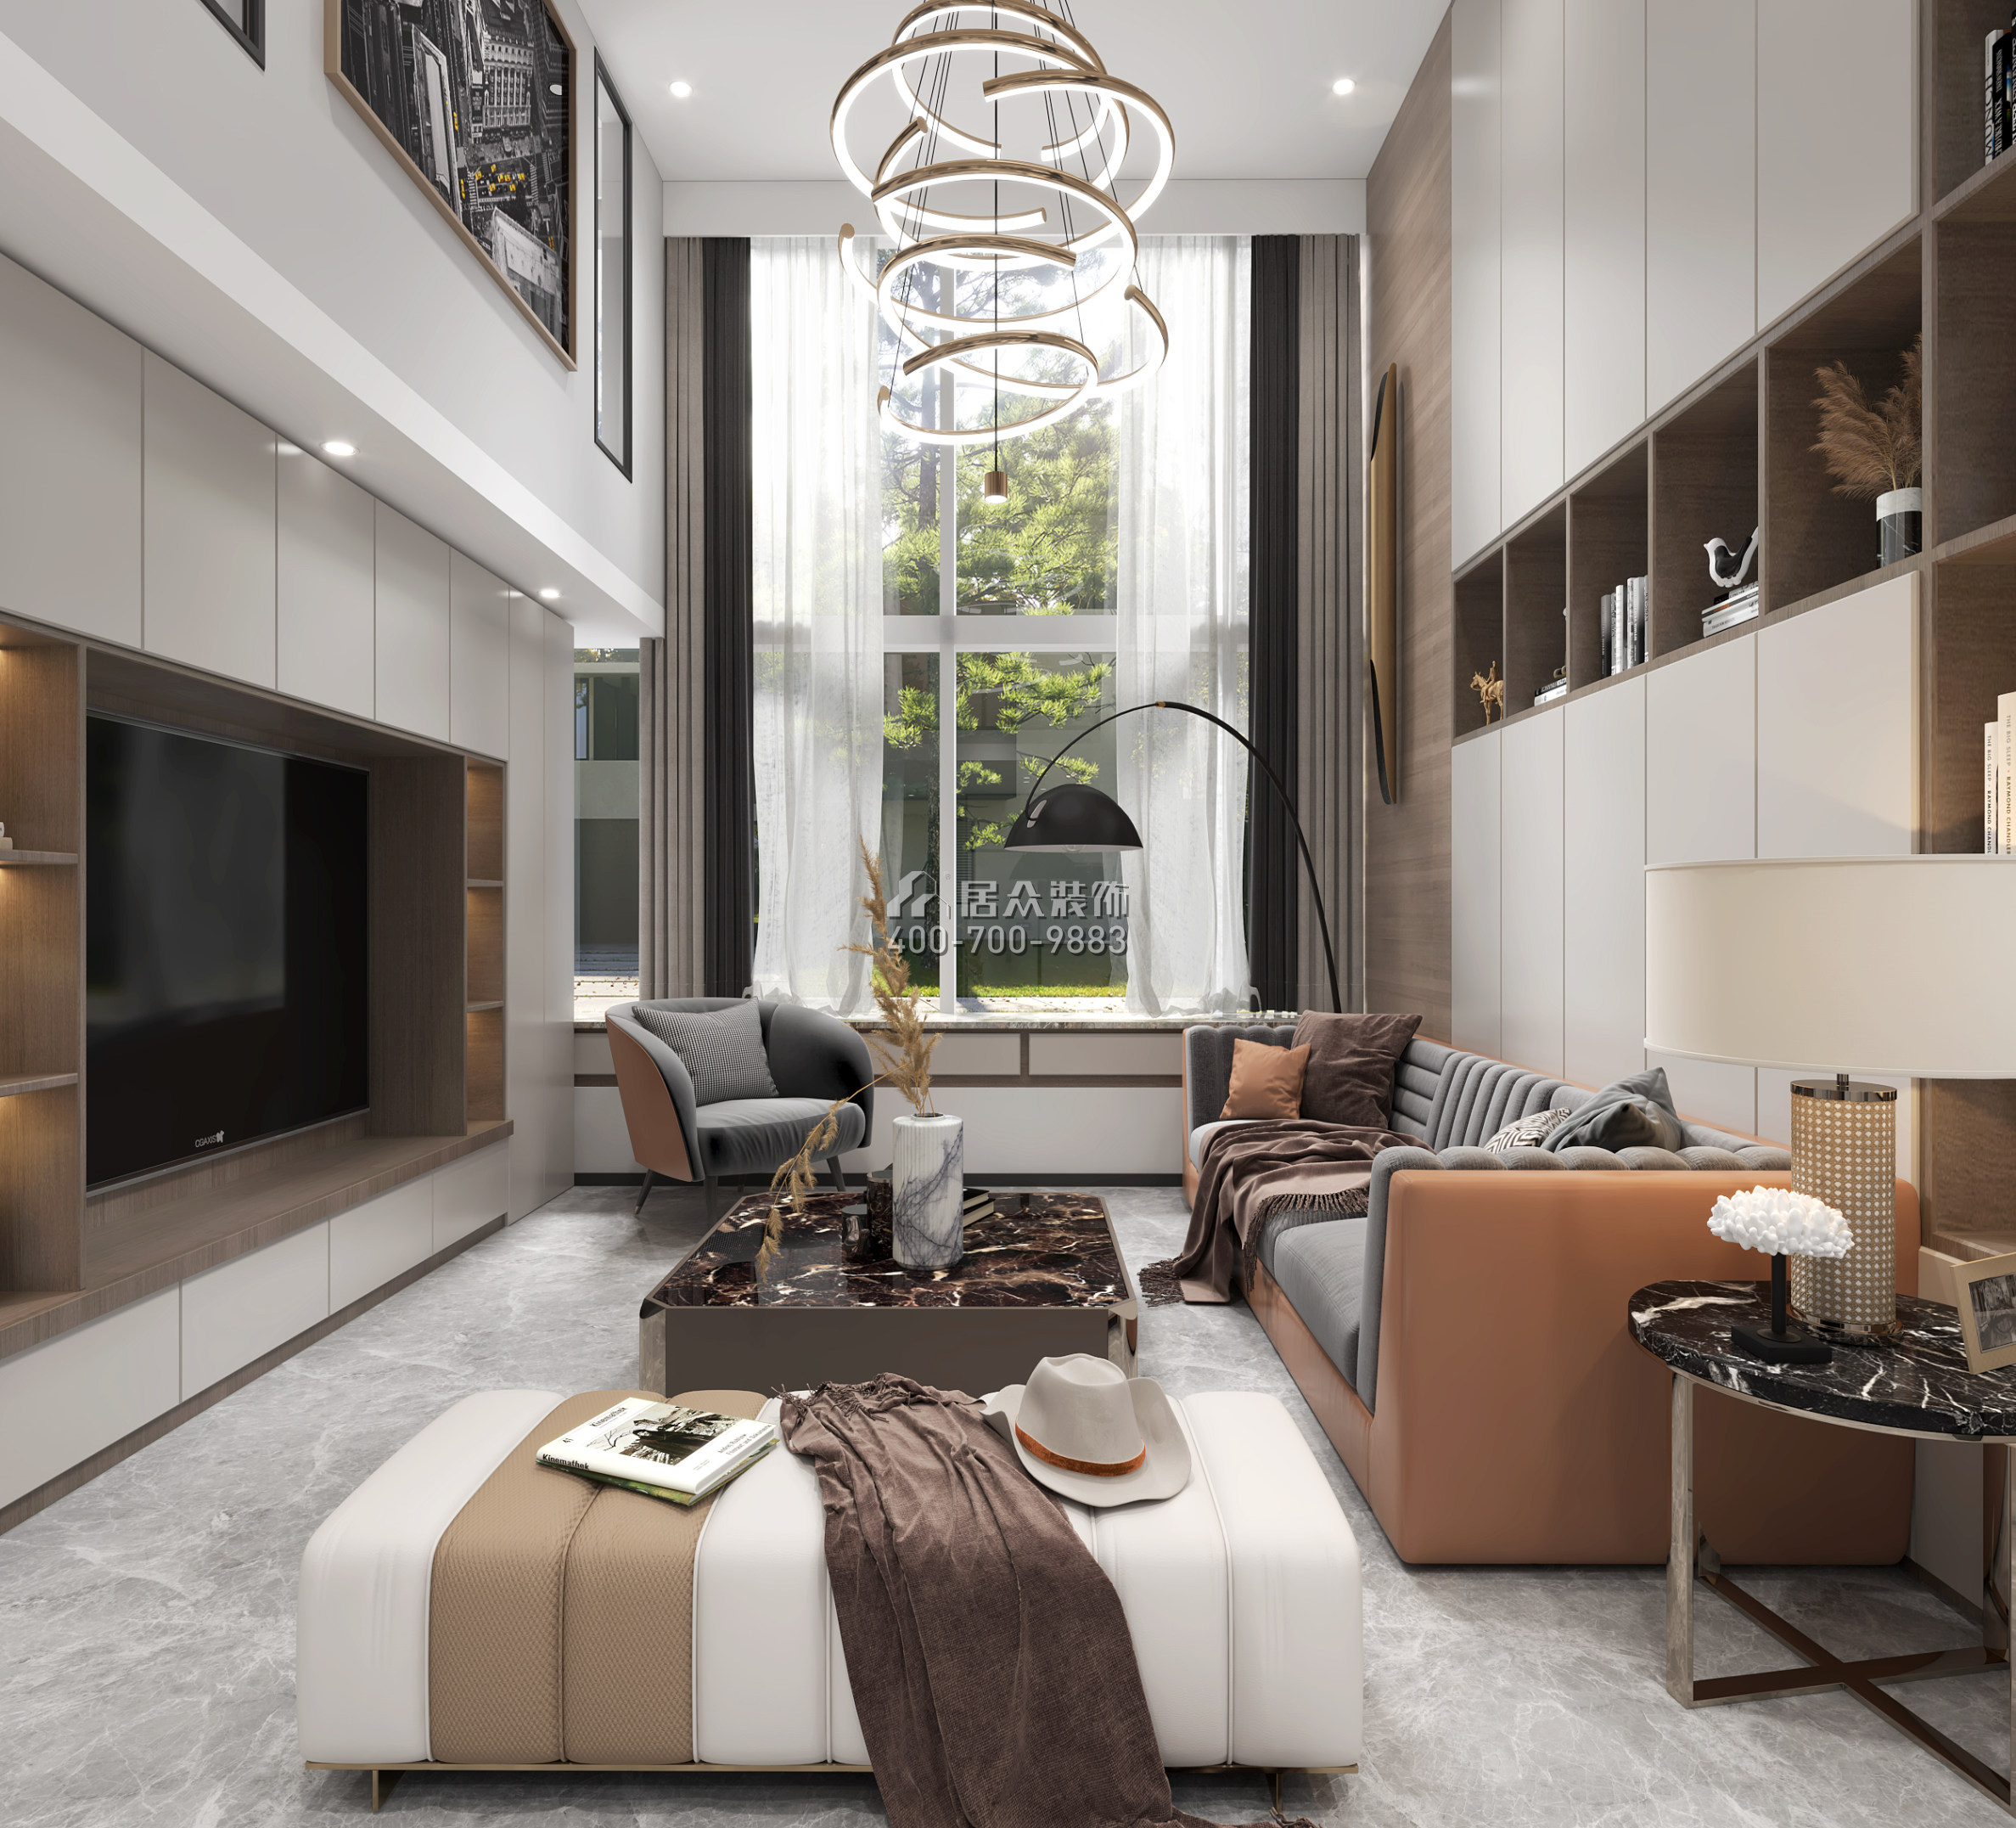 陽光城天悅120平方米現代簡約風格復式戶型客廳裝修效果圖